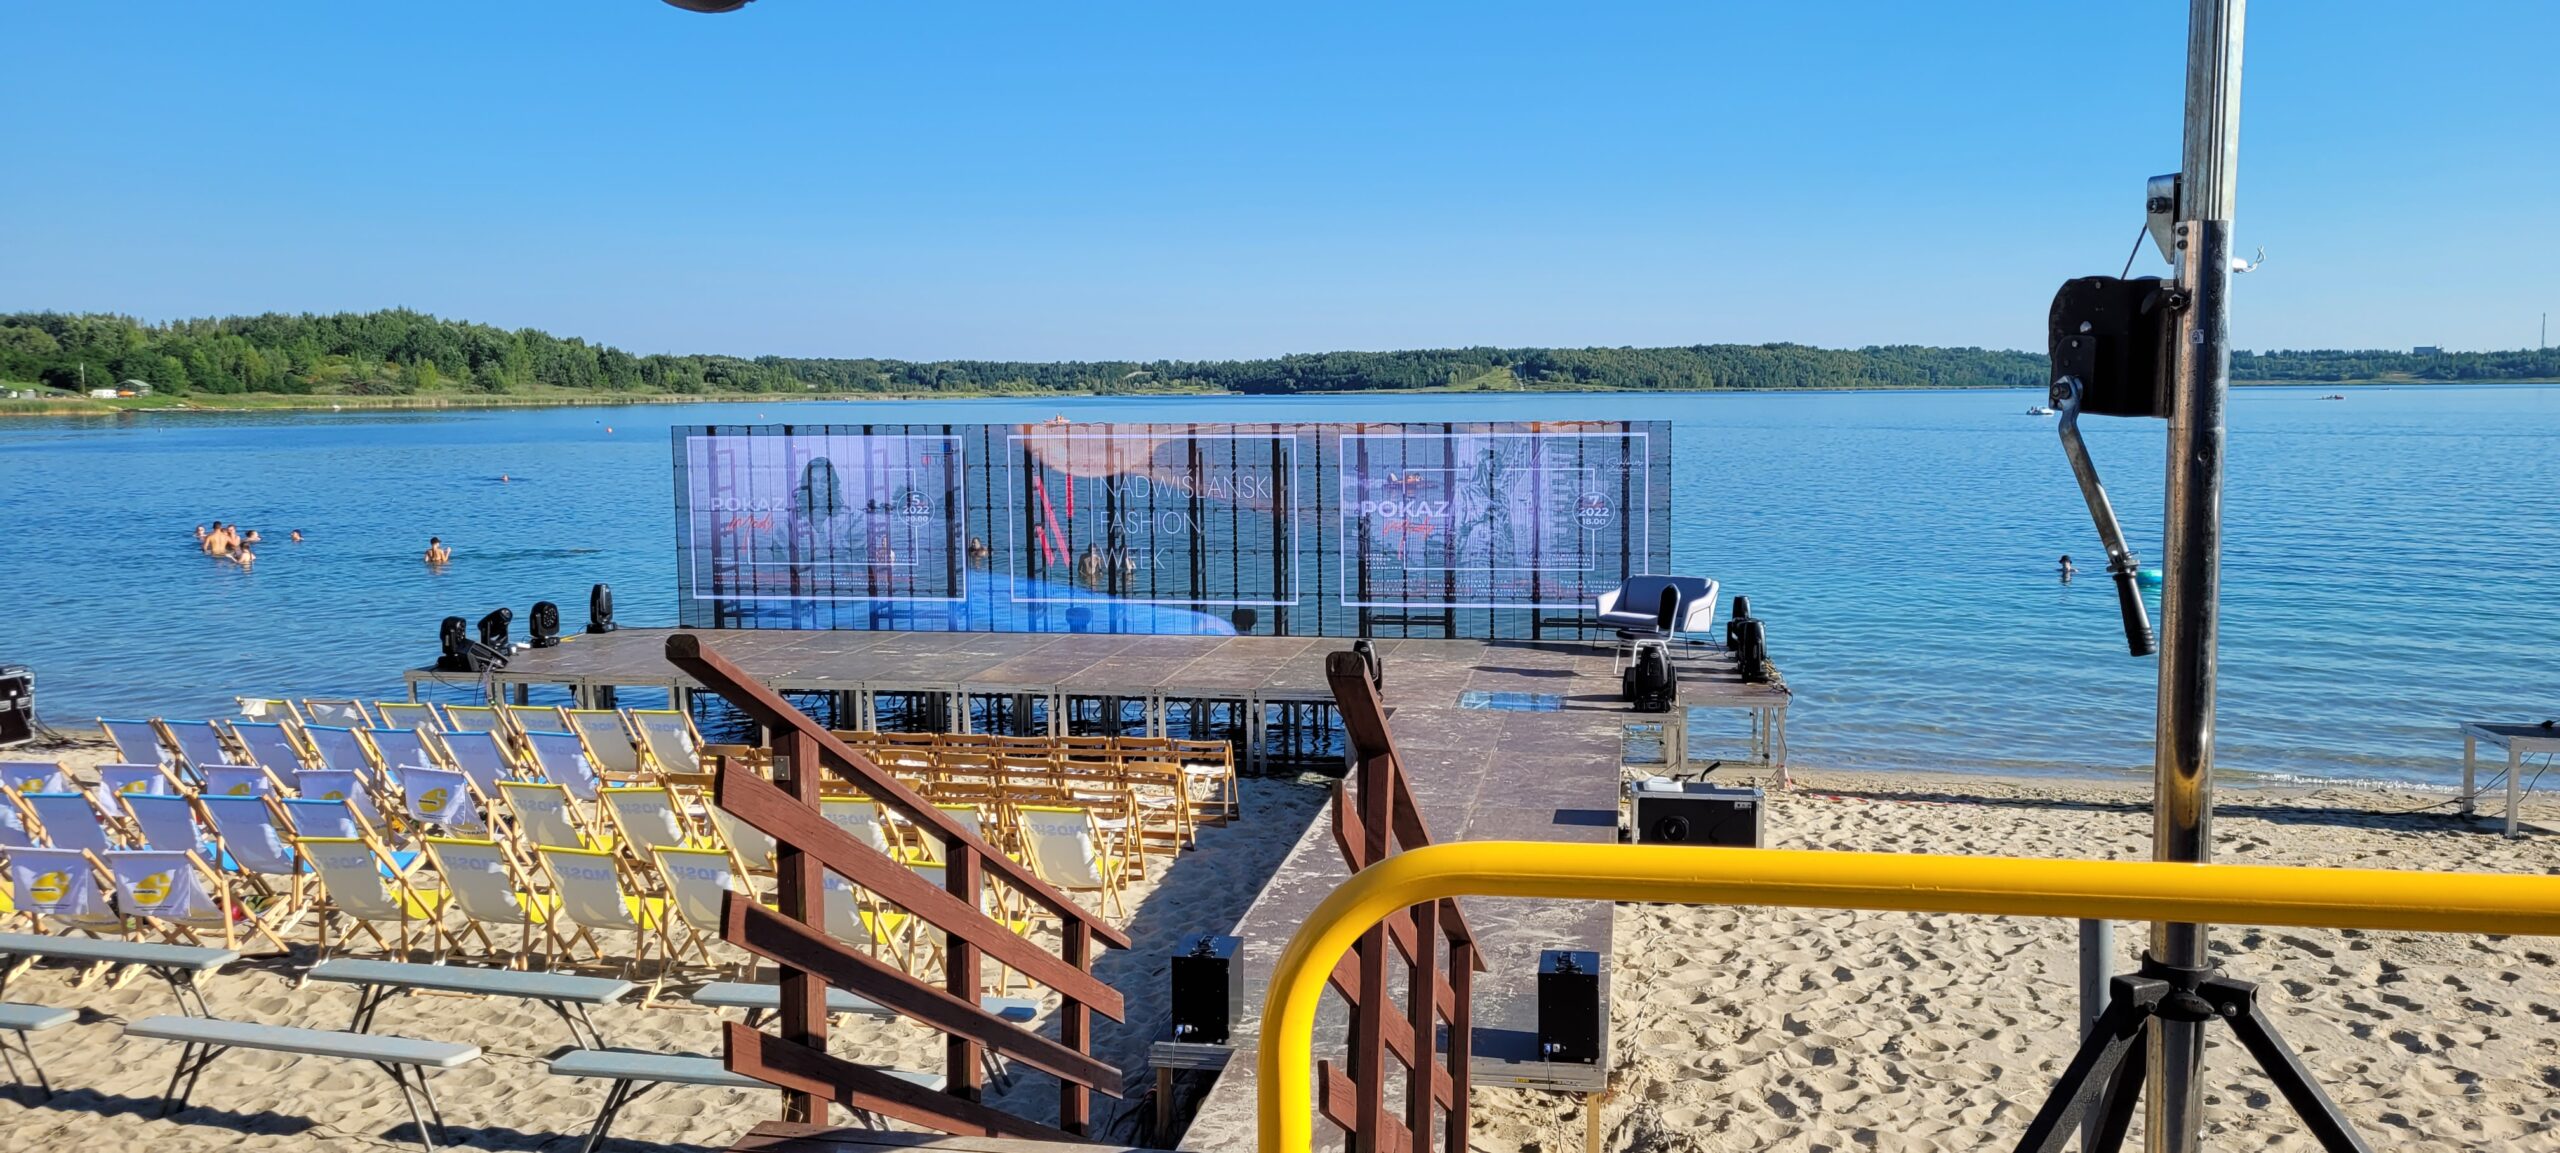 Transparentny ekran LED na tle Jeziora Tarnobrzeskiego w trakcie Nadwiślańskiego Fashion Week